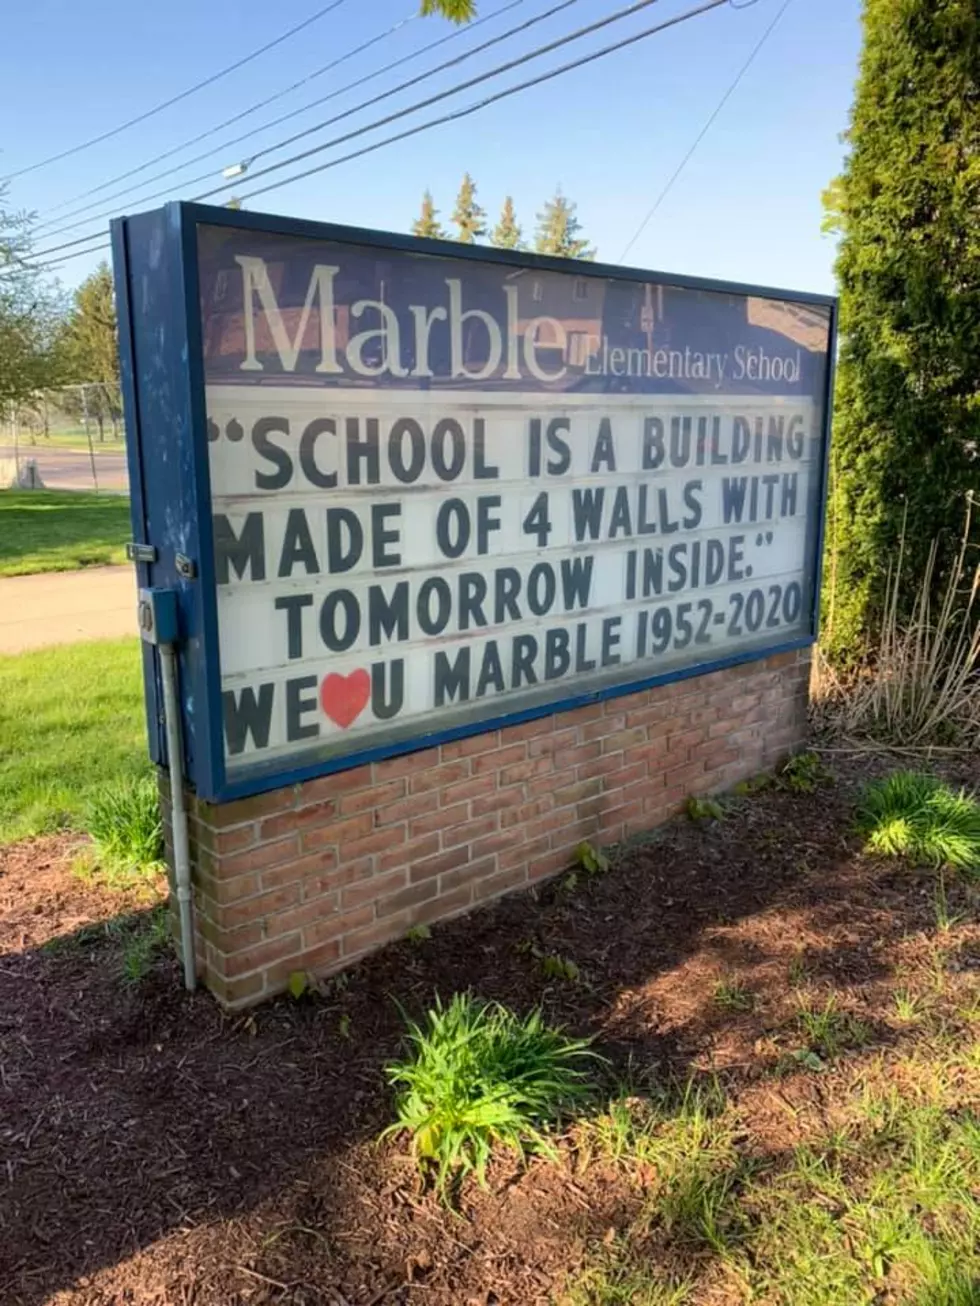 Marble Elementary School Demolition is Happening Very Soon